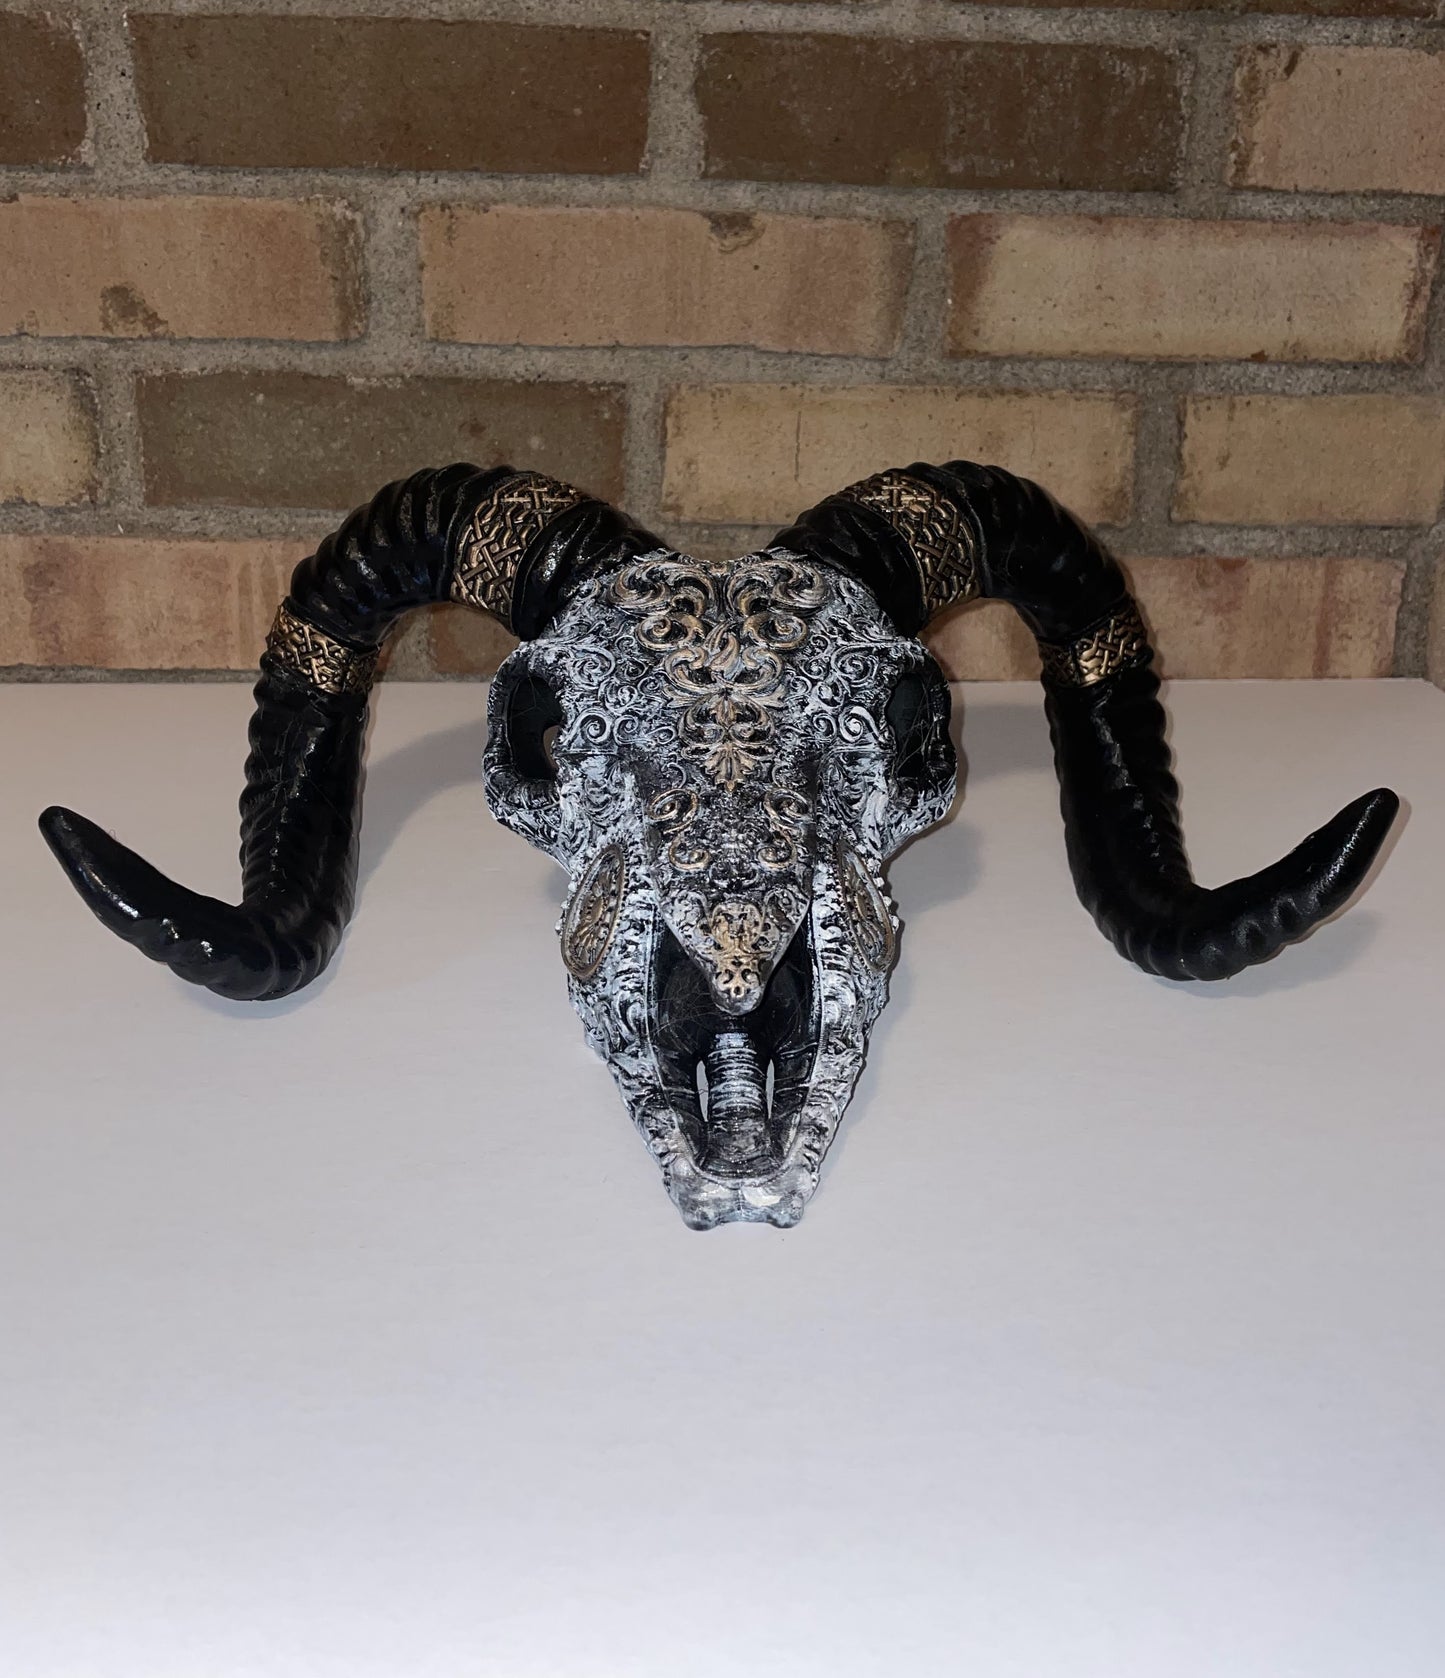 Sheep Skull, Painted